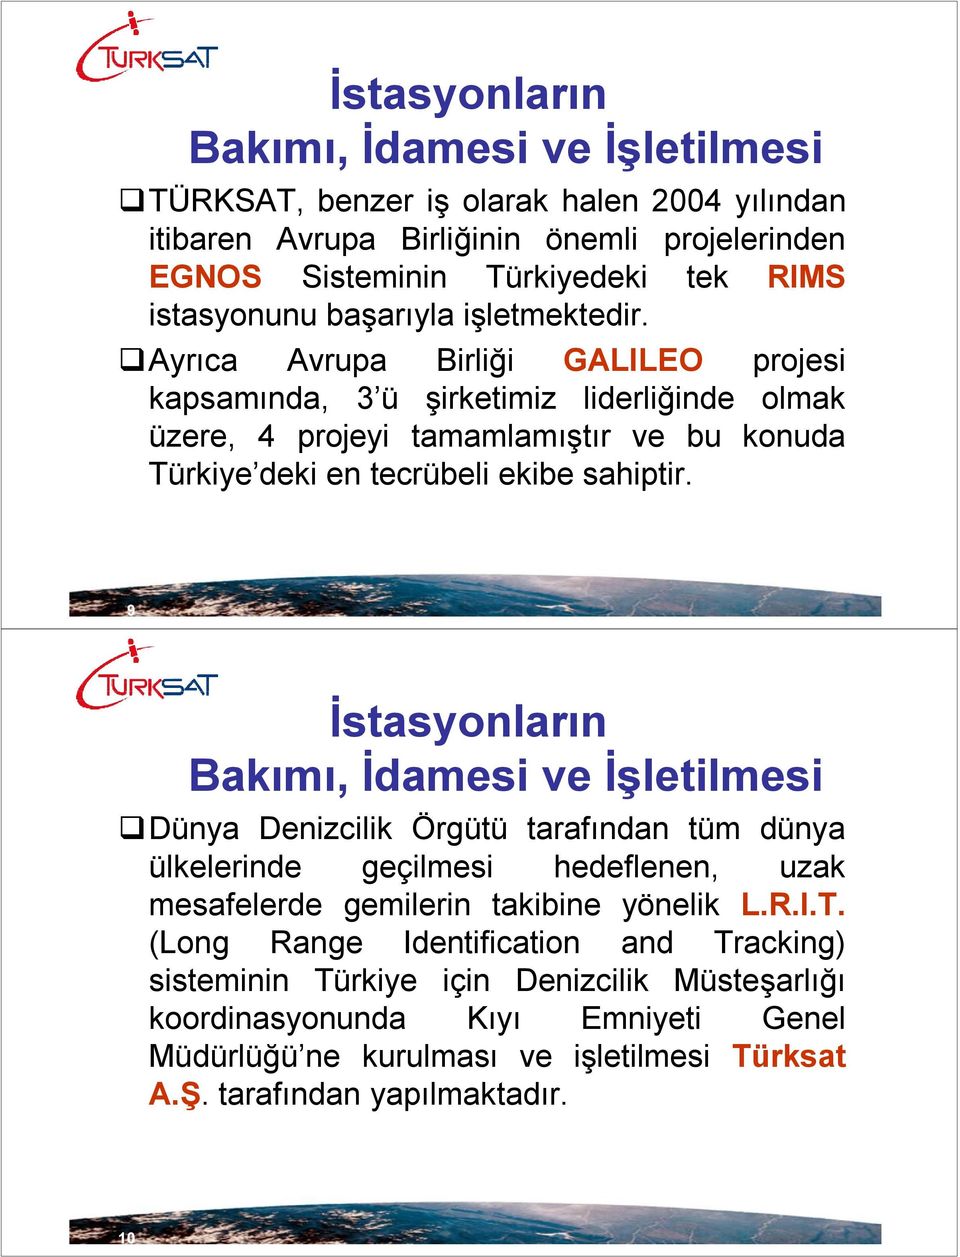 Ayrıca Avrupa Birliği GALILEO projesi kapsamında, 3 ü şirketimiz liderliğinde olmak üzere, 4 projeyi tamamlamıştır ve bu konuda Türkiye deki en tecrübeli ekibe sahiptir.